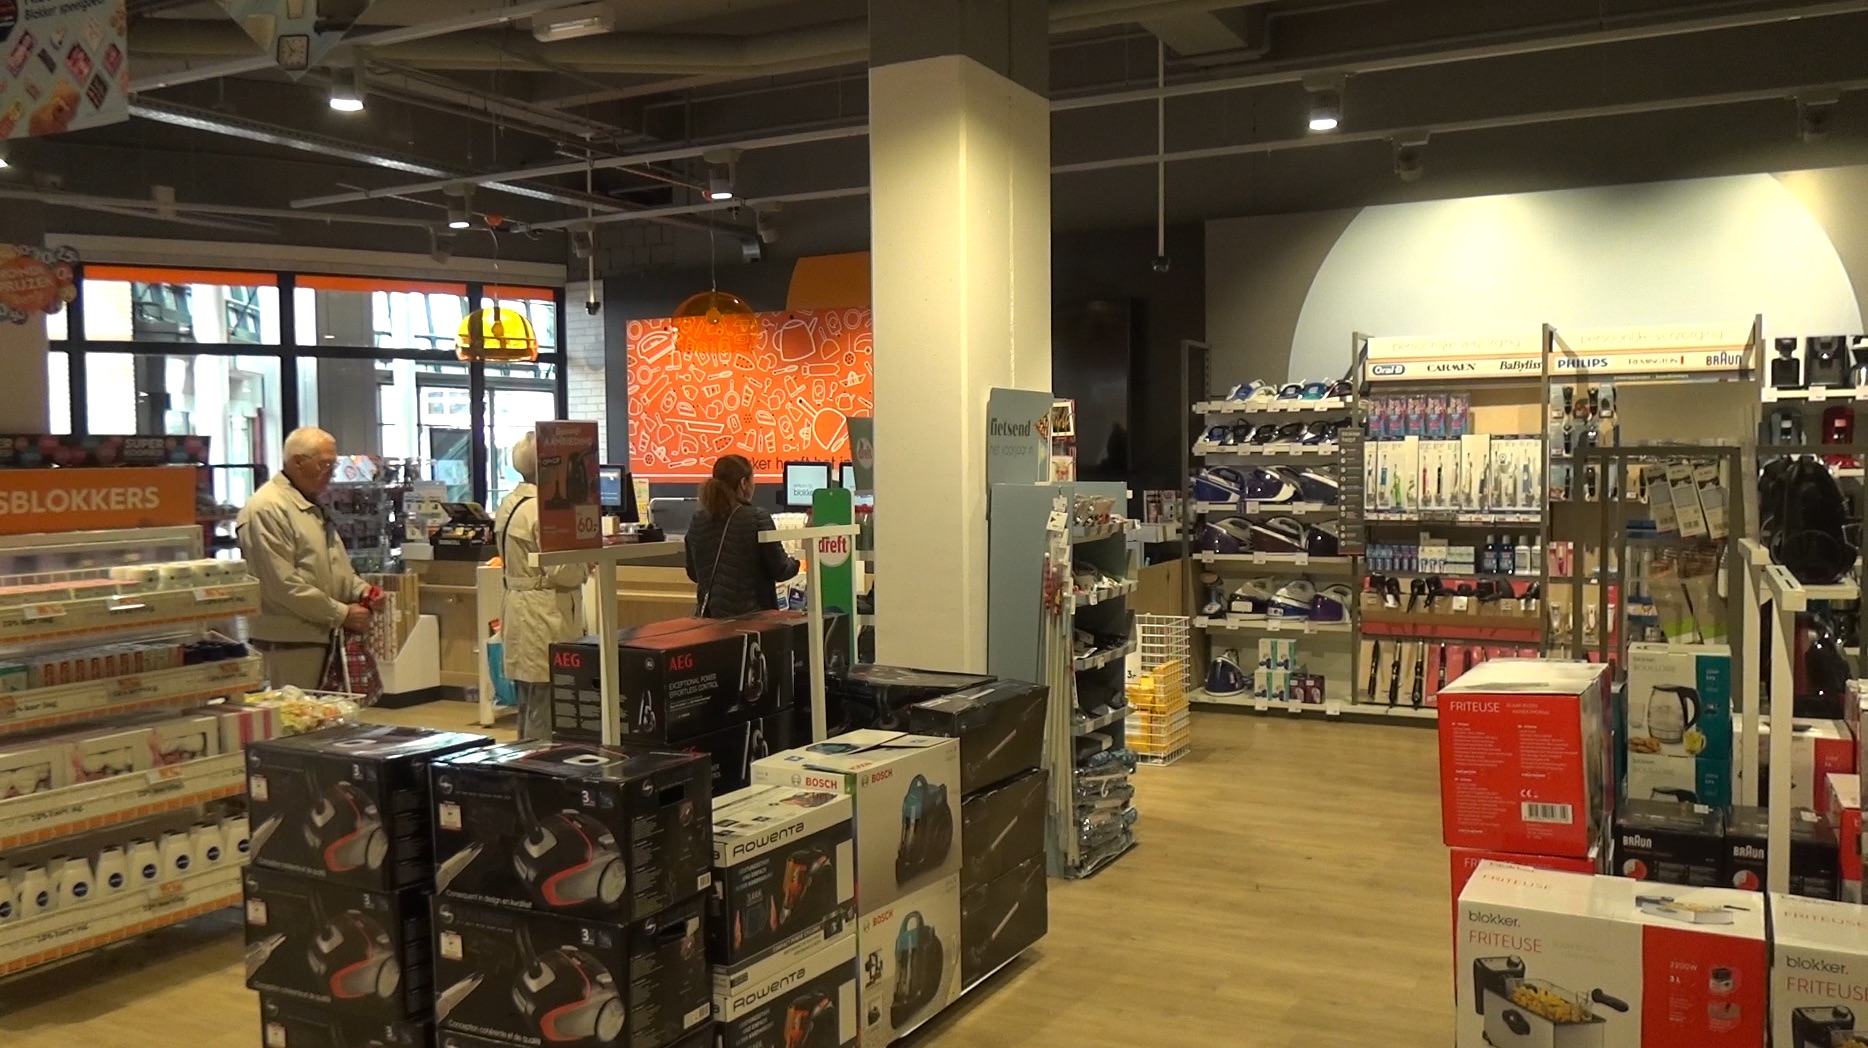 pols Rose kleur Nauwkeurig VIDEO] Blokker na verbouwing geopend met groter assortiment - Rijswijk.TV